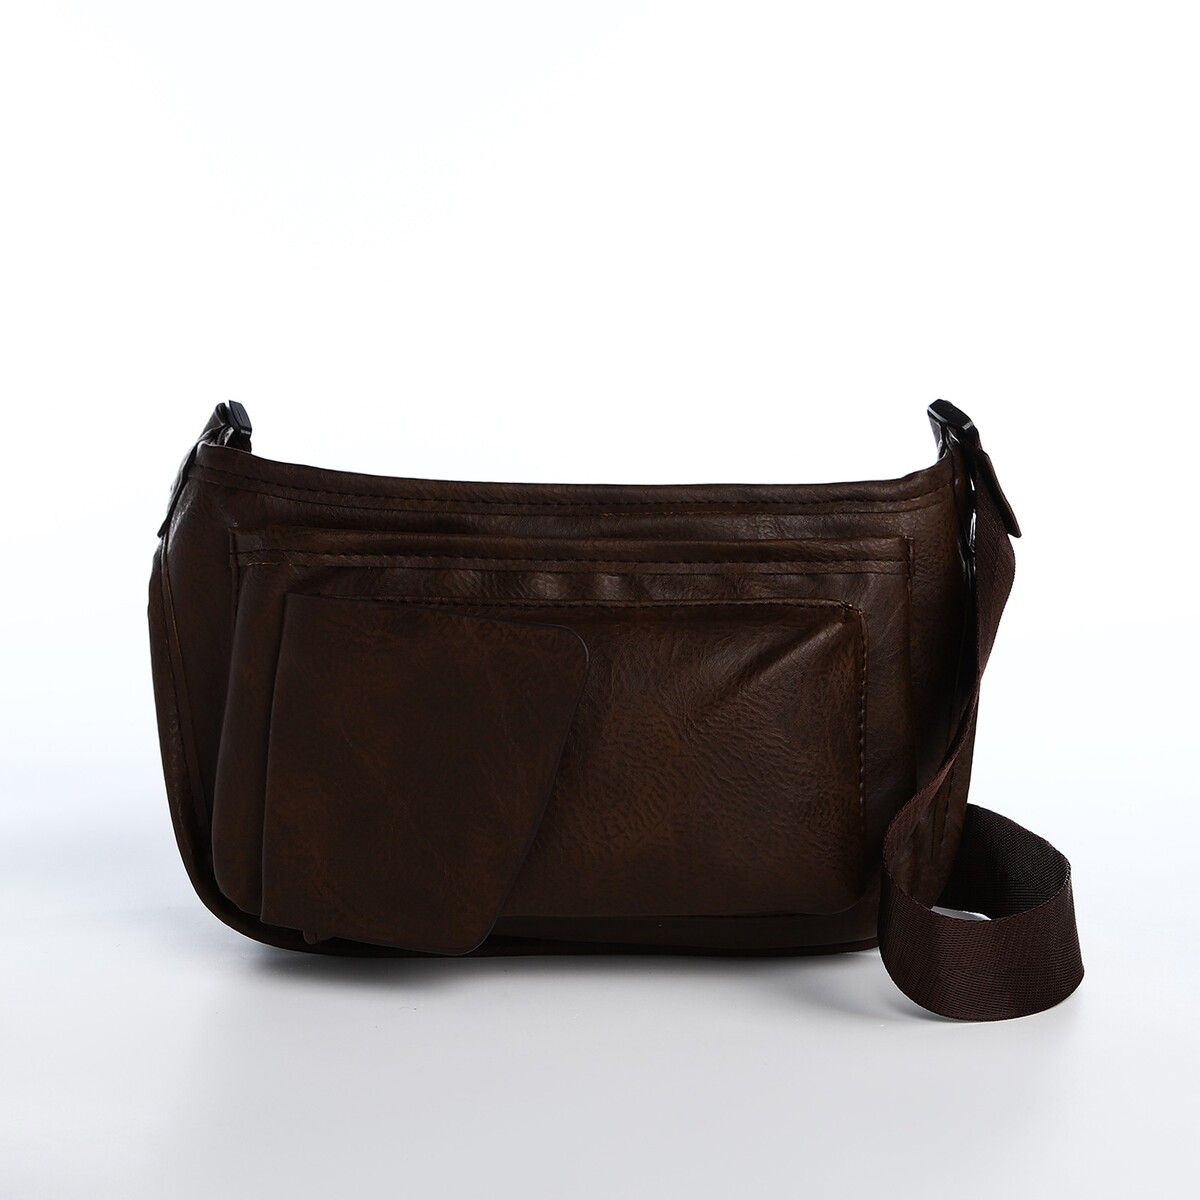 Поясная сумка на молнии, 3 наружных кармана, цвет коричневый поясная сумка на молнии 3 наружных кармана зацеп на бедро коричневый